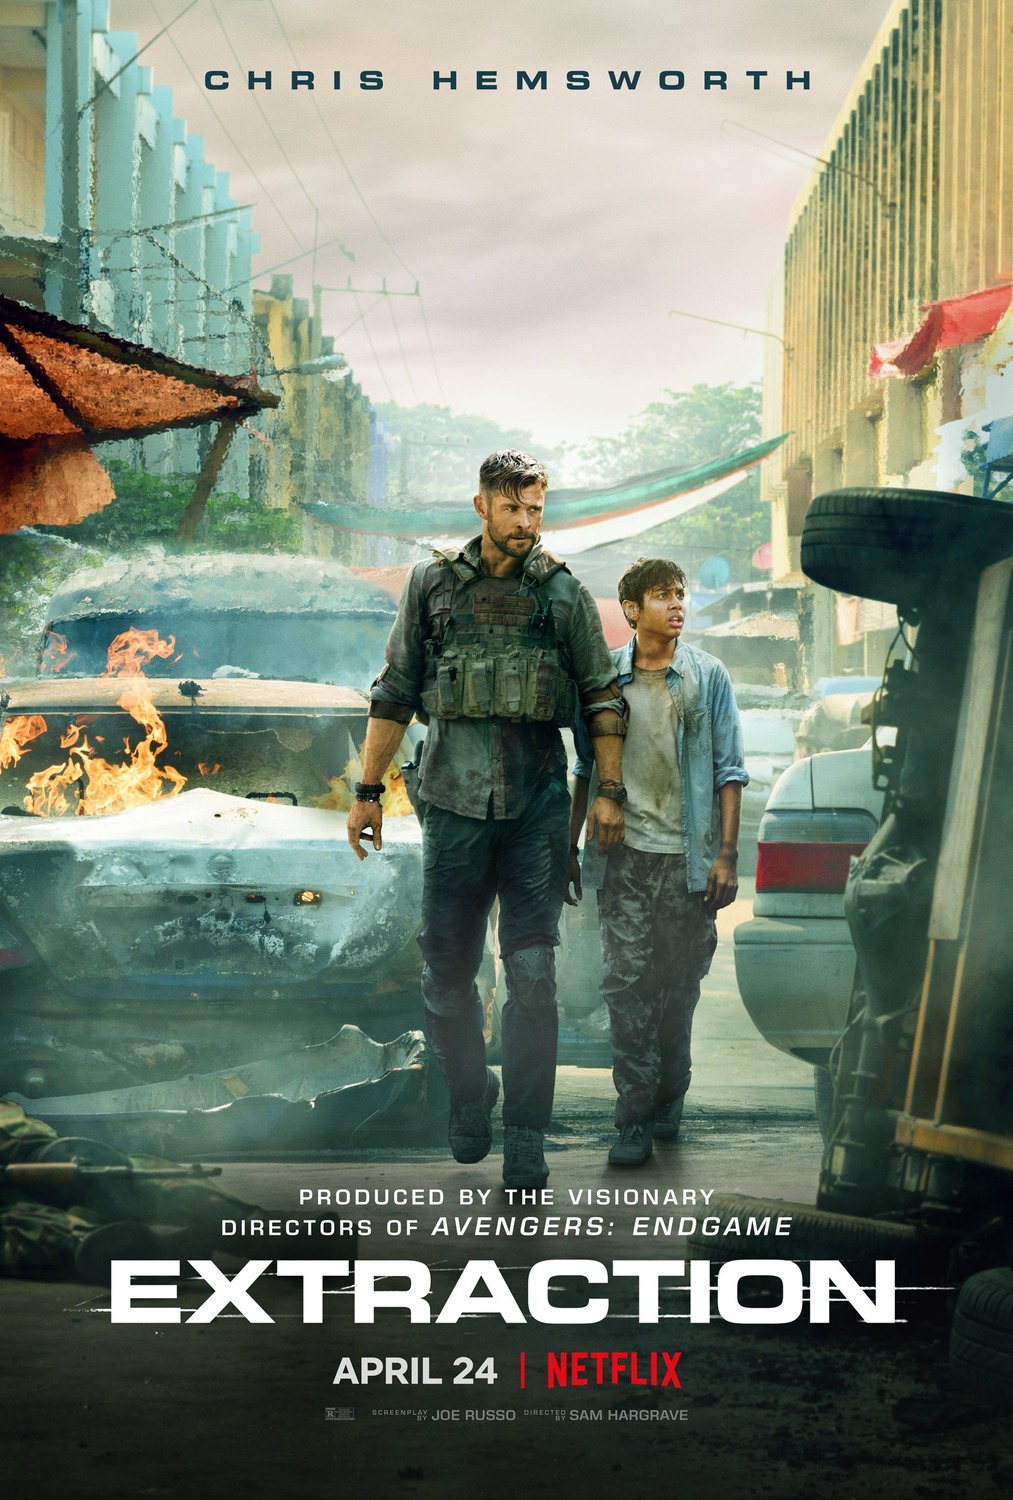 Resgate: veja sinopse, elenco e trailer do 1º filme com Chris Hemsworth